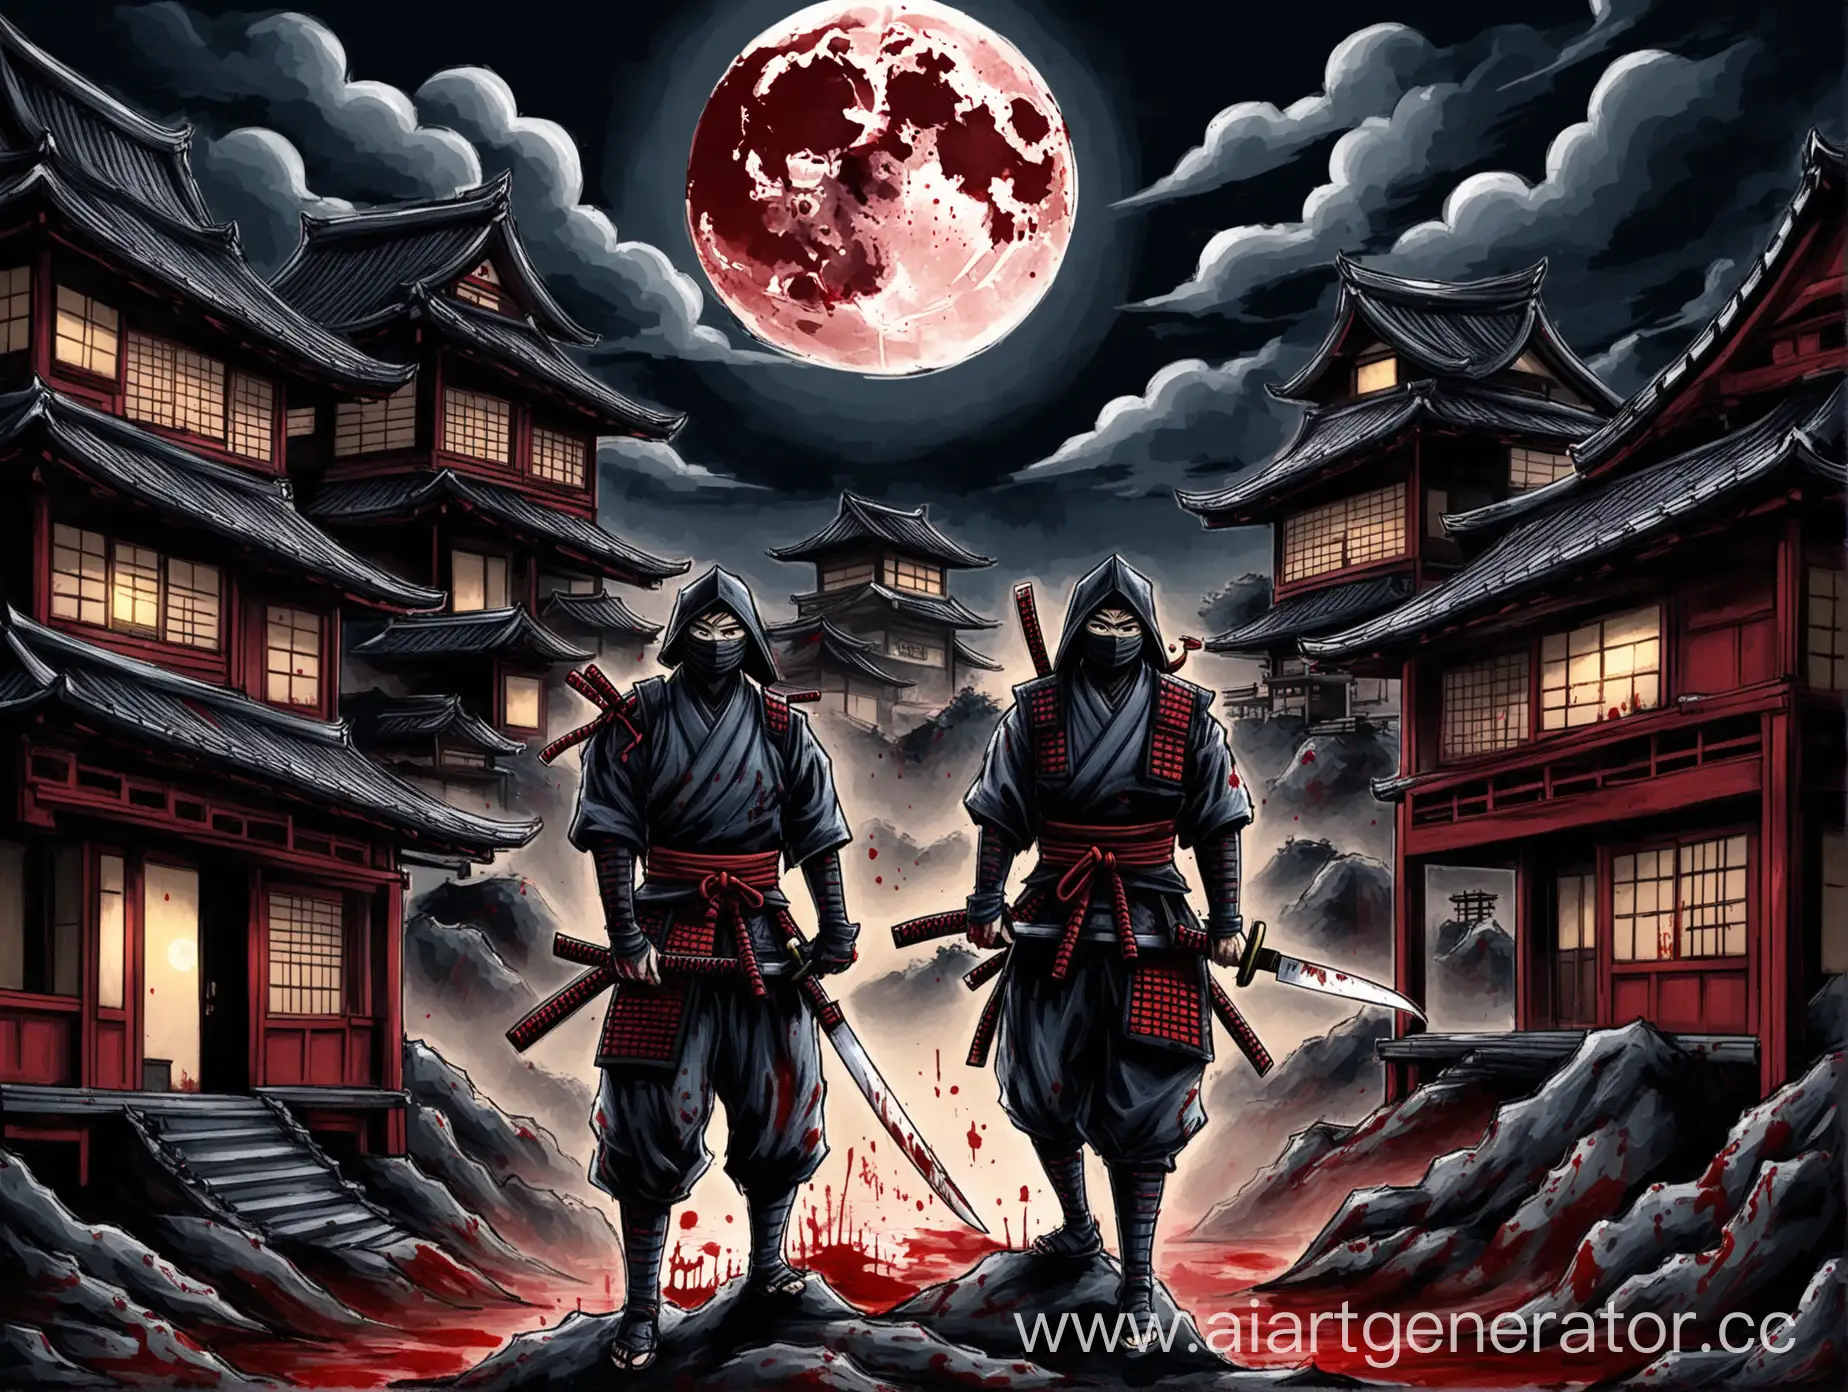 Silent-Samurai-Moonlit-Assassination-Scene